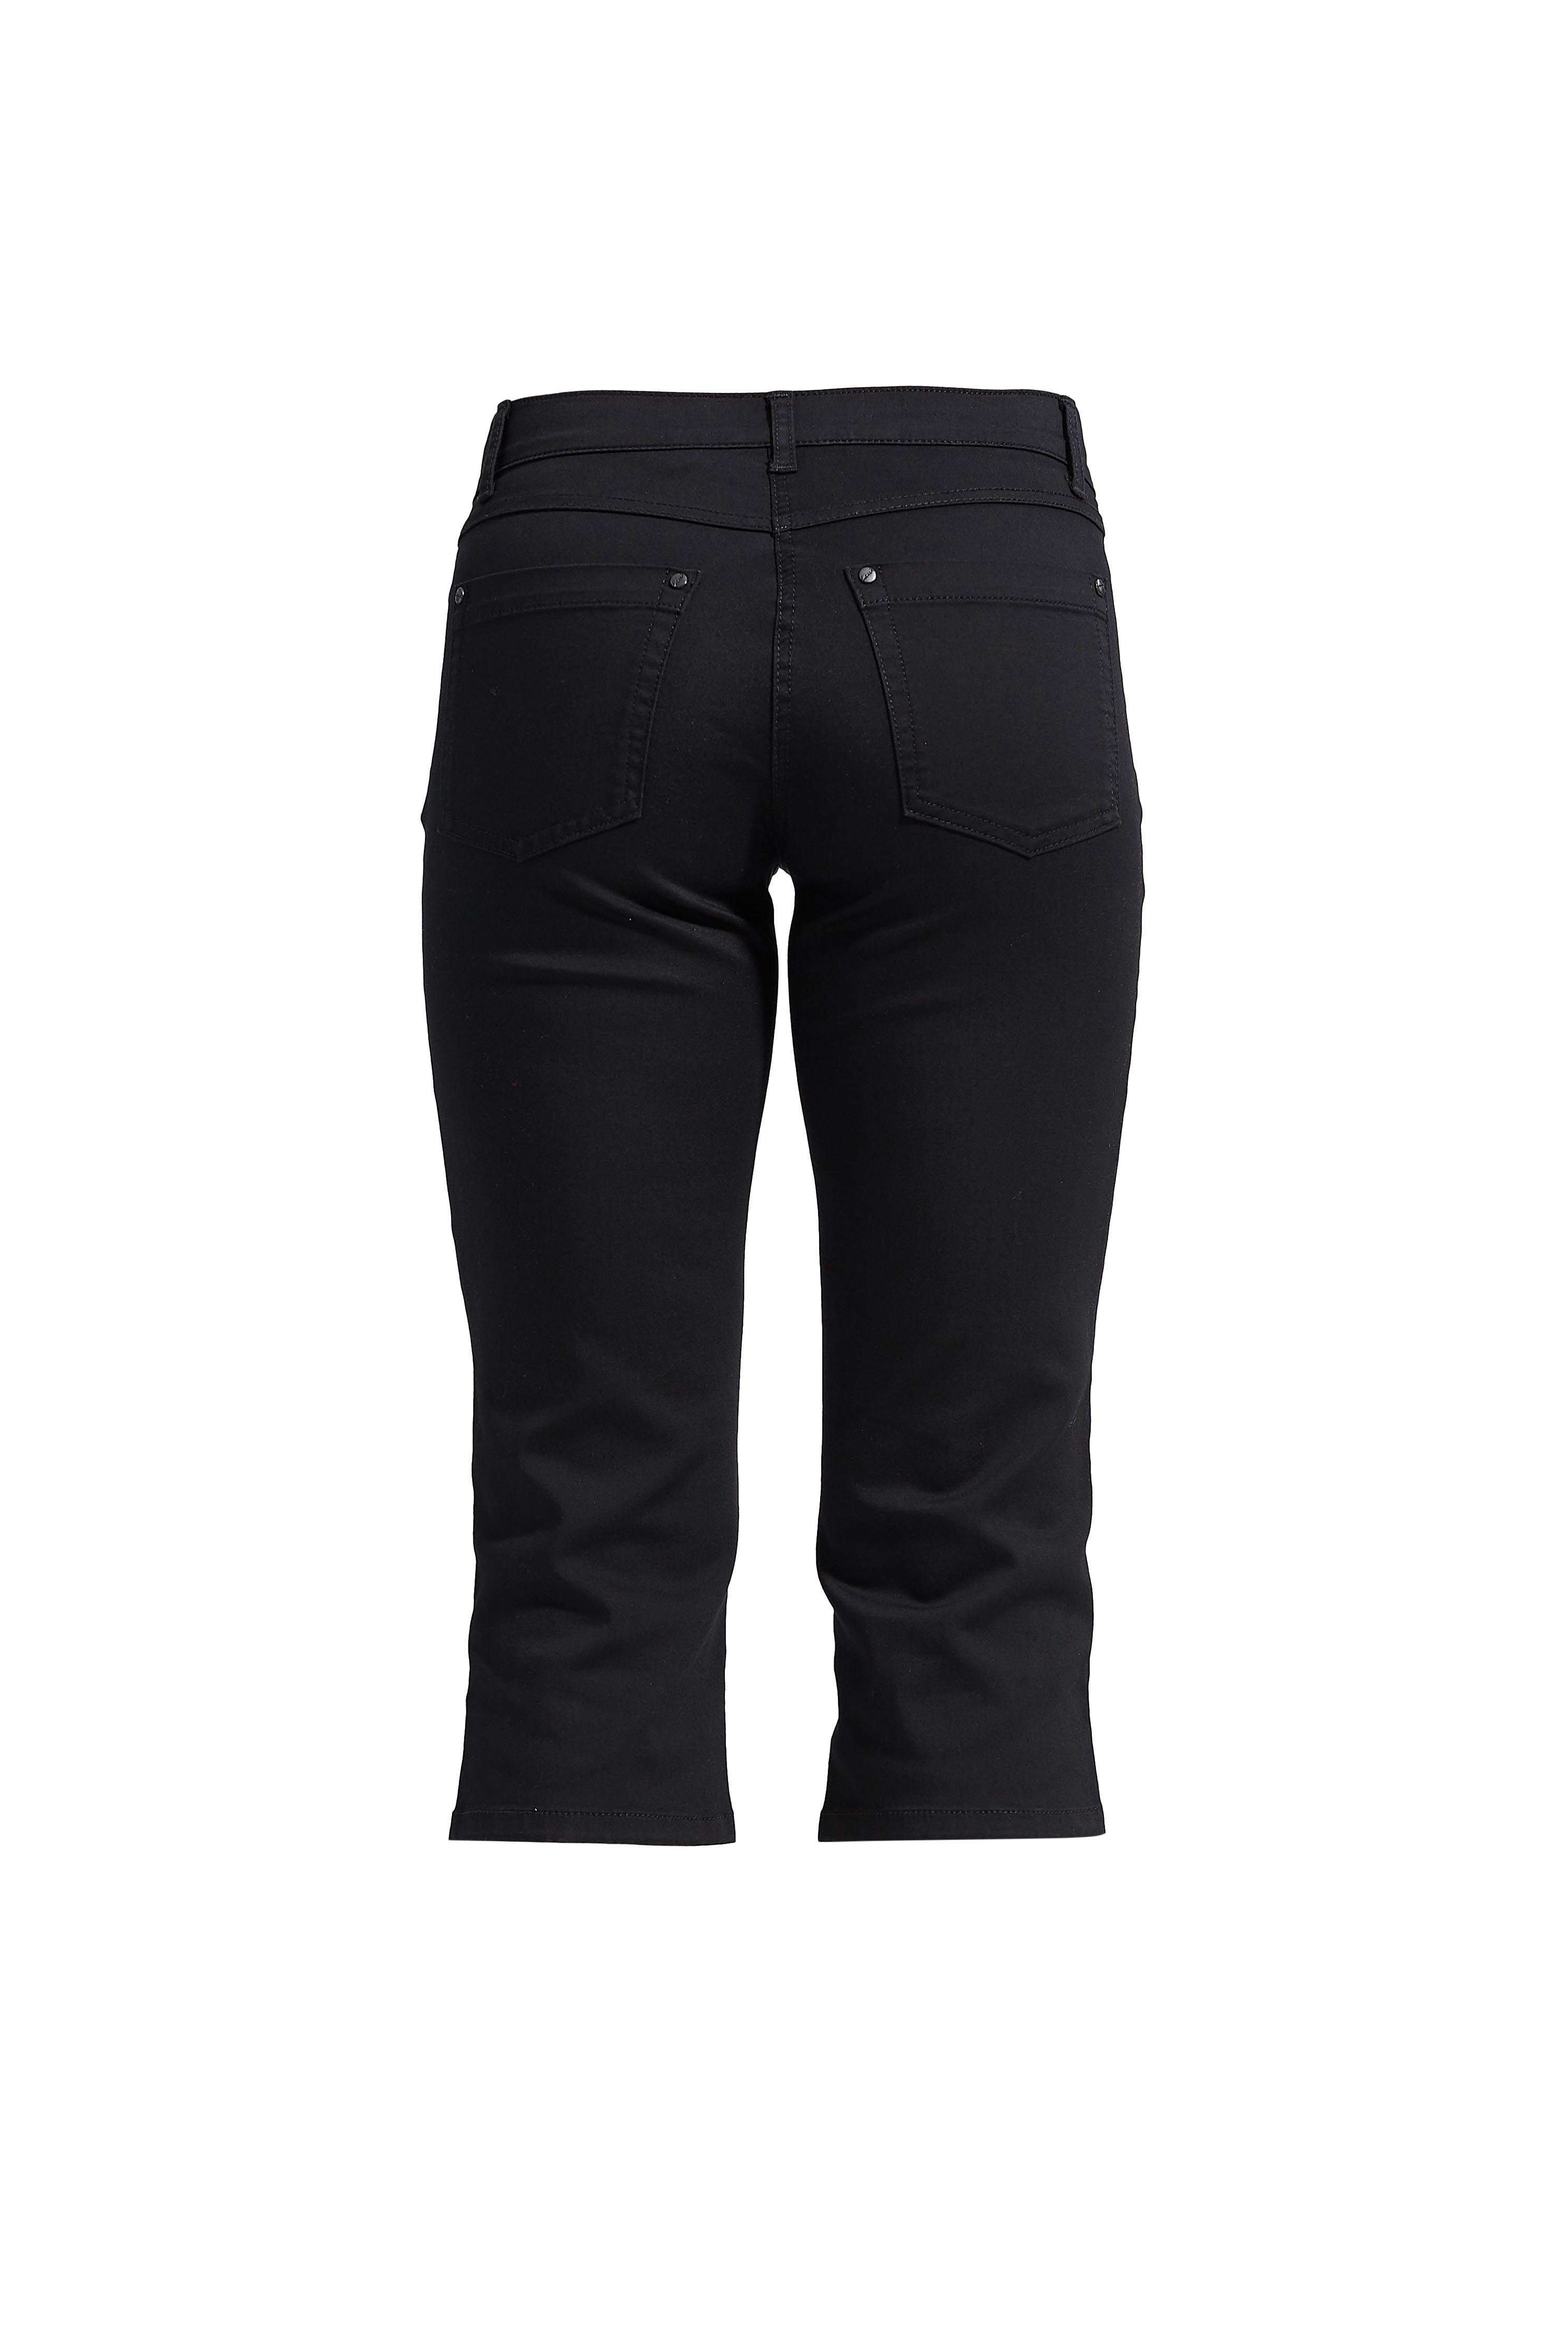 LAURIE Charlotte Regular Capri Housut Trousers REGULAR 99100 Black